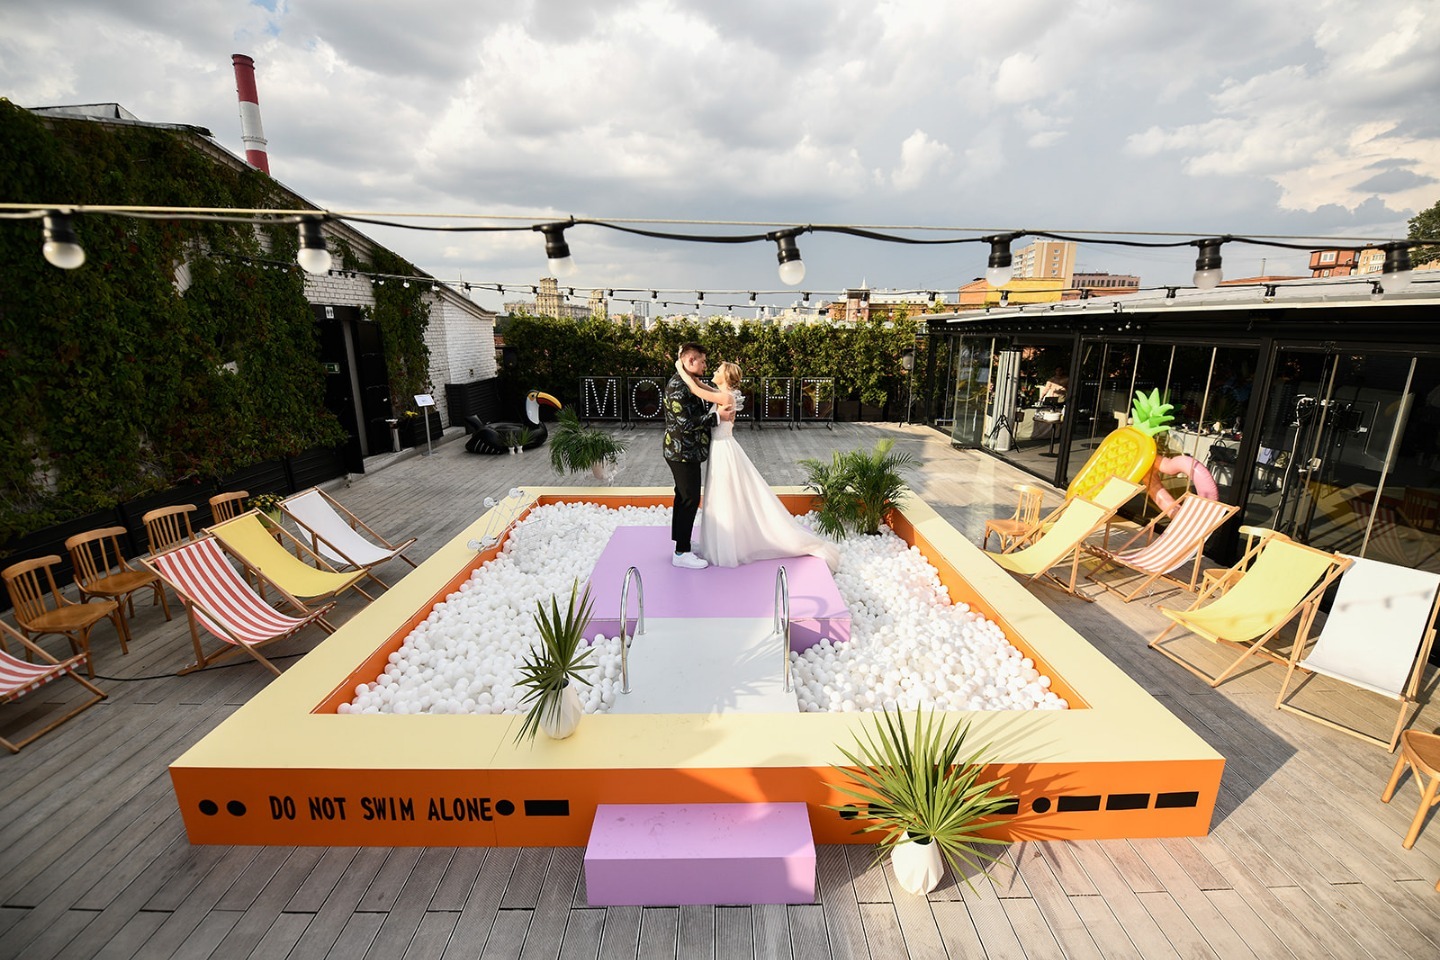 Точка точка тире: молодежная свадьба на крыше